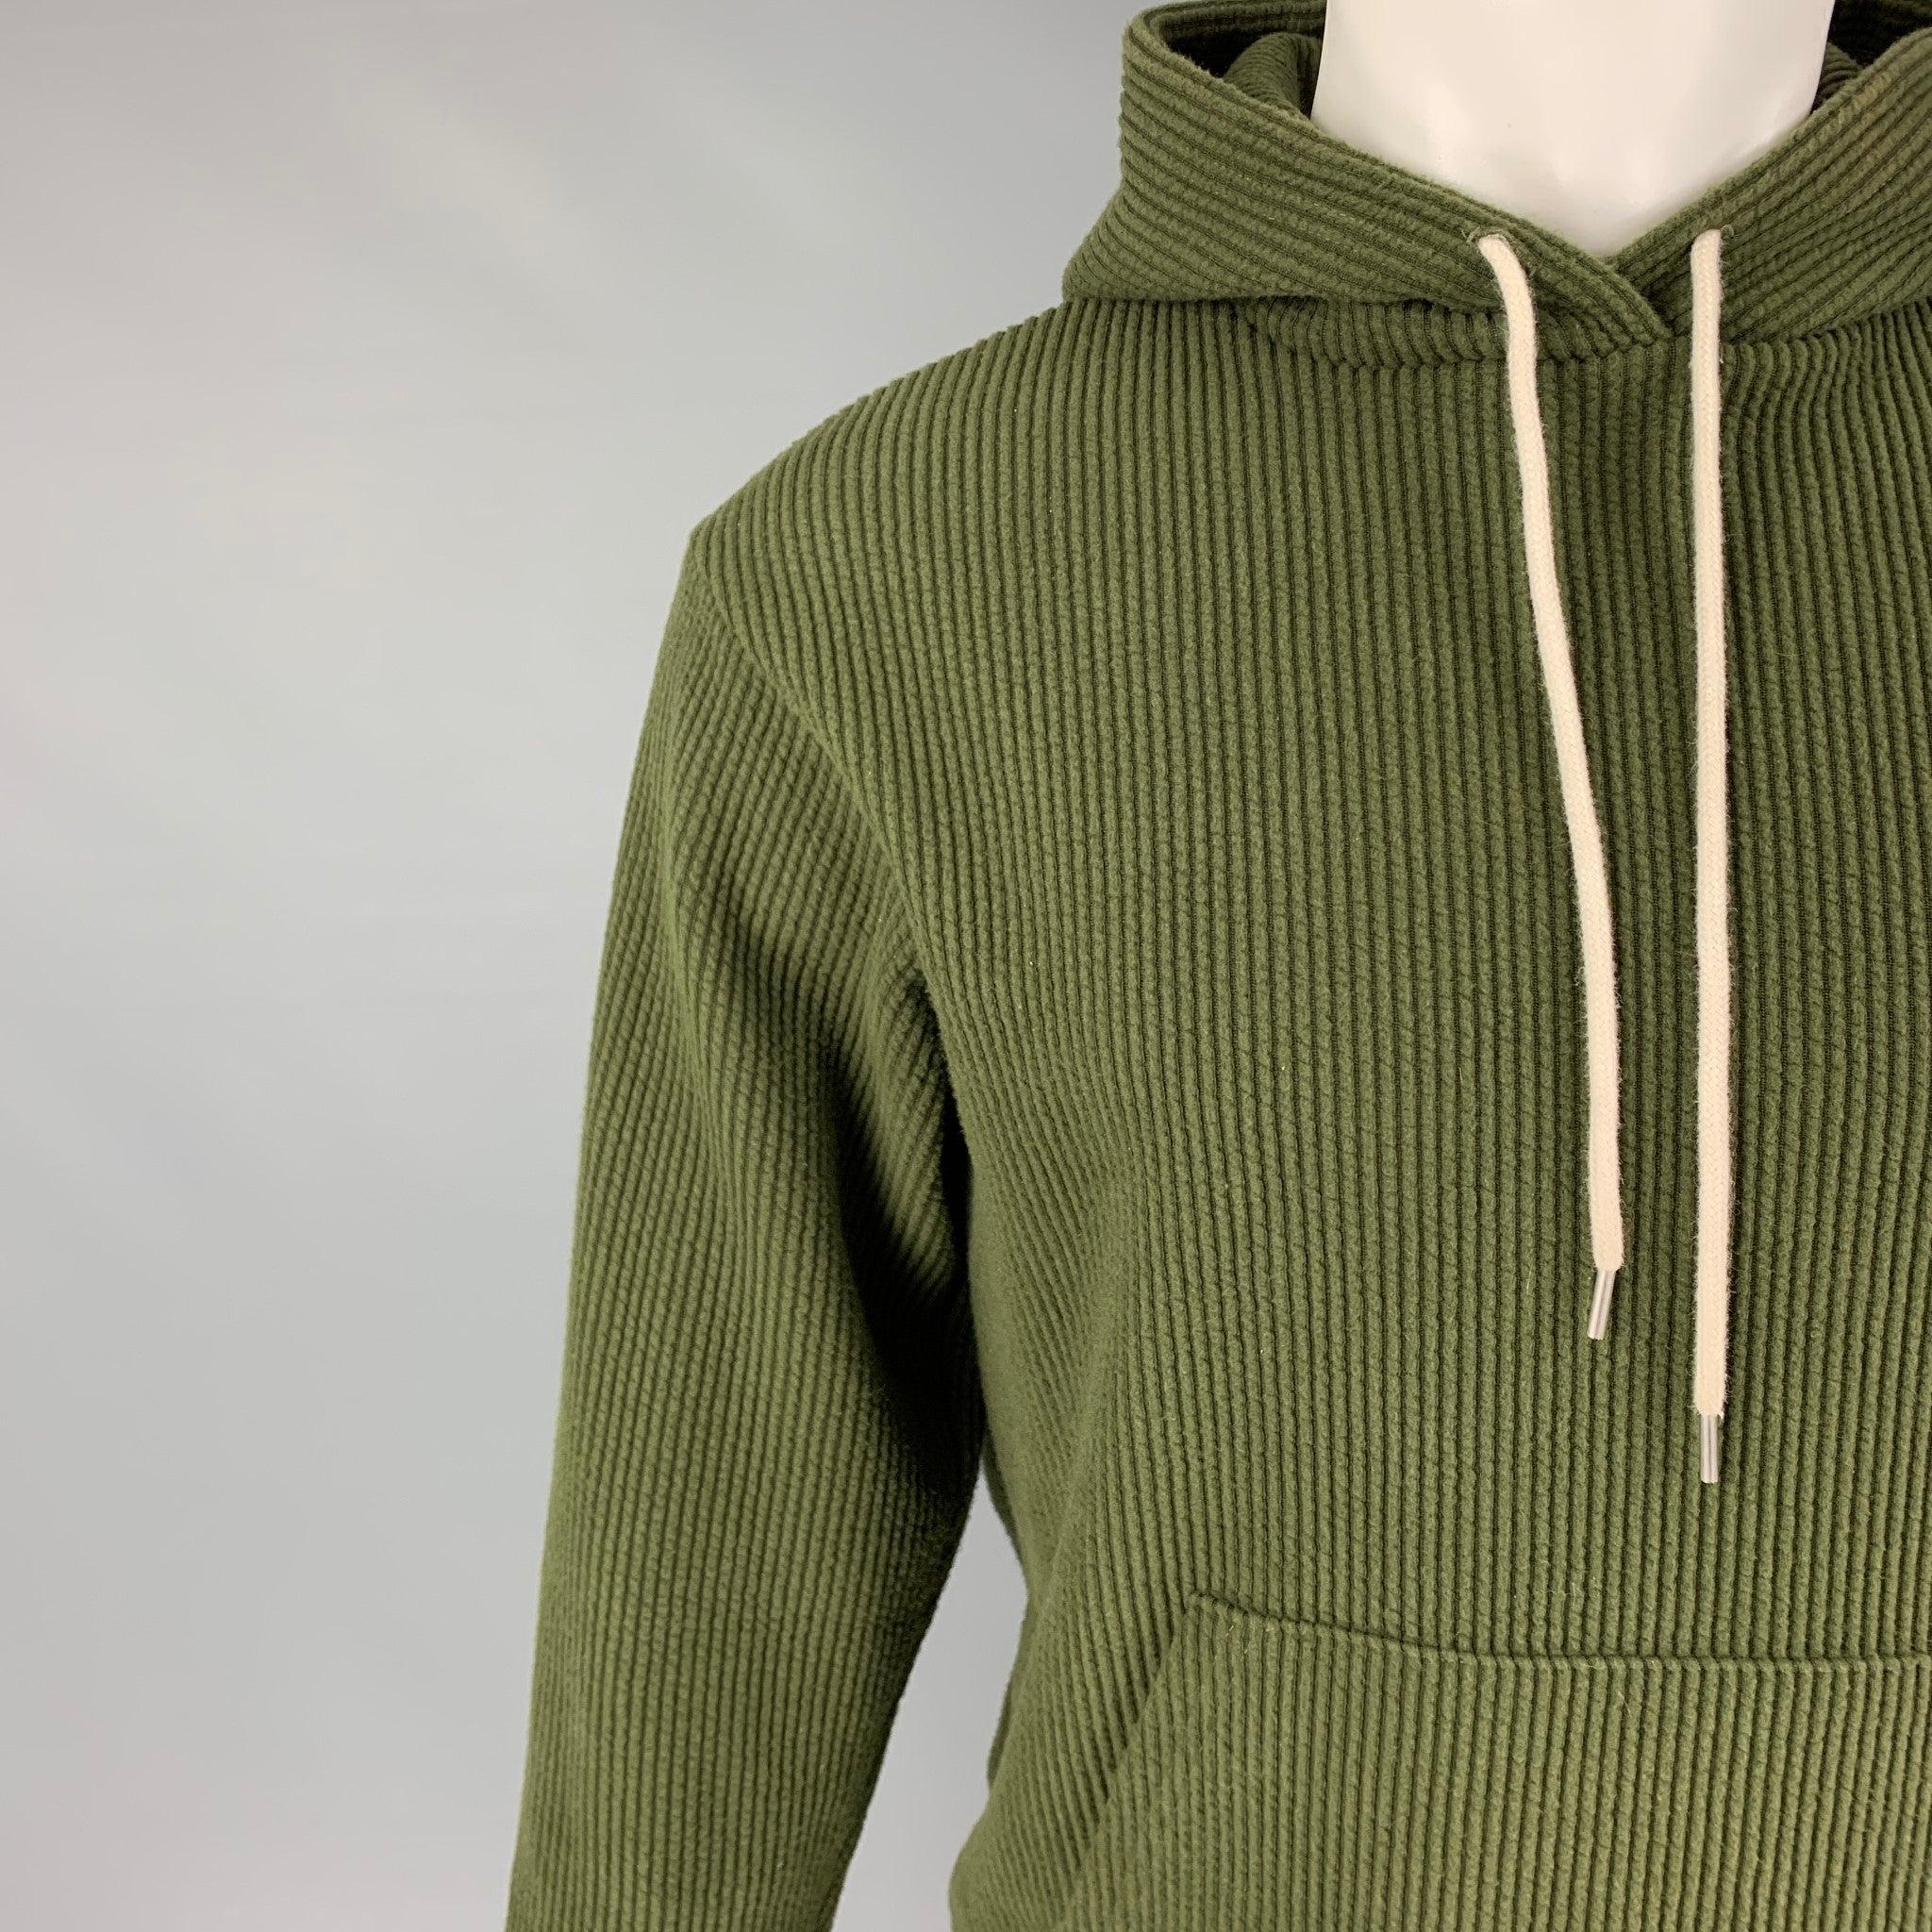 Le sweat-shirt JOHN ELLIOTT est en coton/polyester texturé vert. Il est doté d'une capuche, d'une pochette et d'un cordon de serrage blanc. Fabriqué aux Etats-Unis. Excellent état. 

Marqué :   1 

Mesures : 
 
Épaule : 18 pouces Poitrine : 38